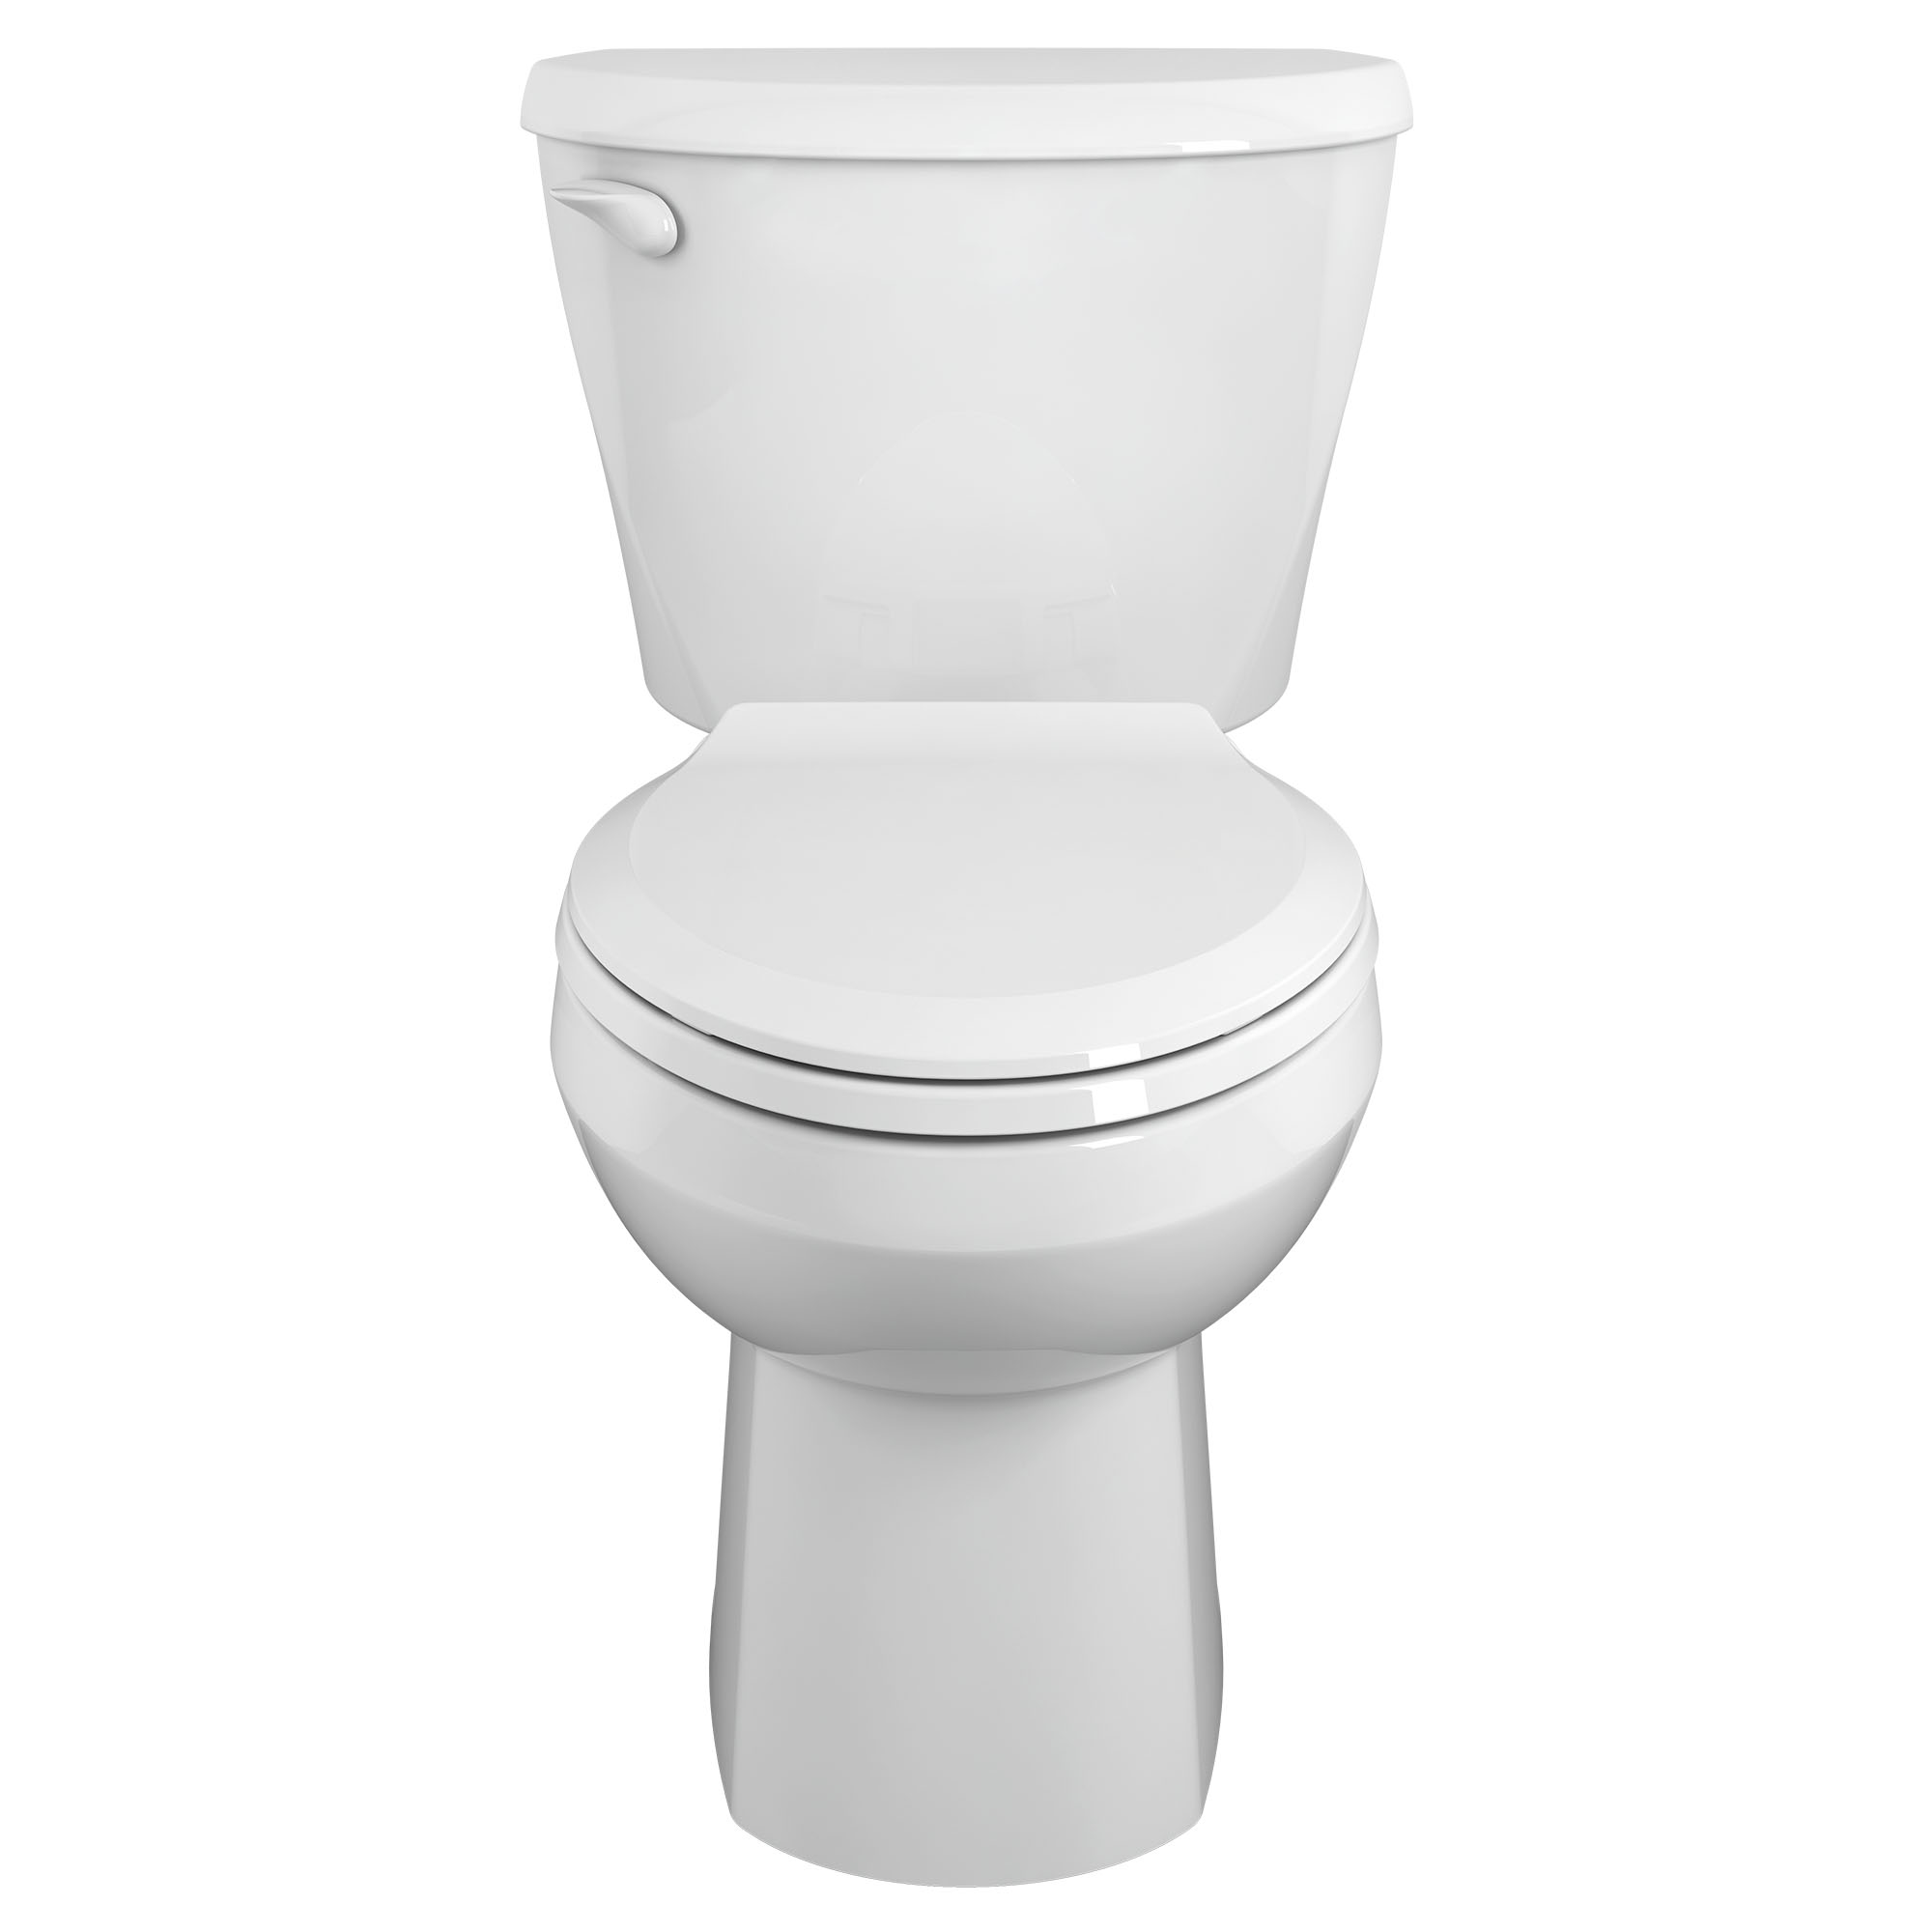 Toilette Colony, 2 pièces, 1,28 gpc/4,8 lpc, à cuvette allongée à hauteur régulière, sans siège